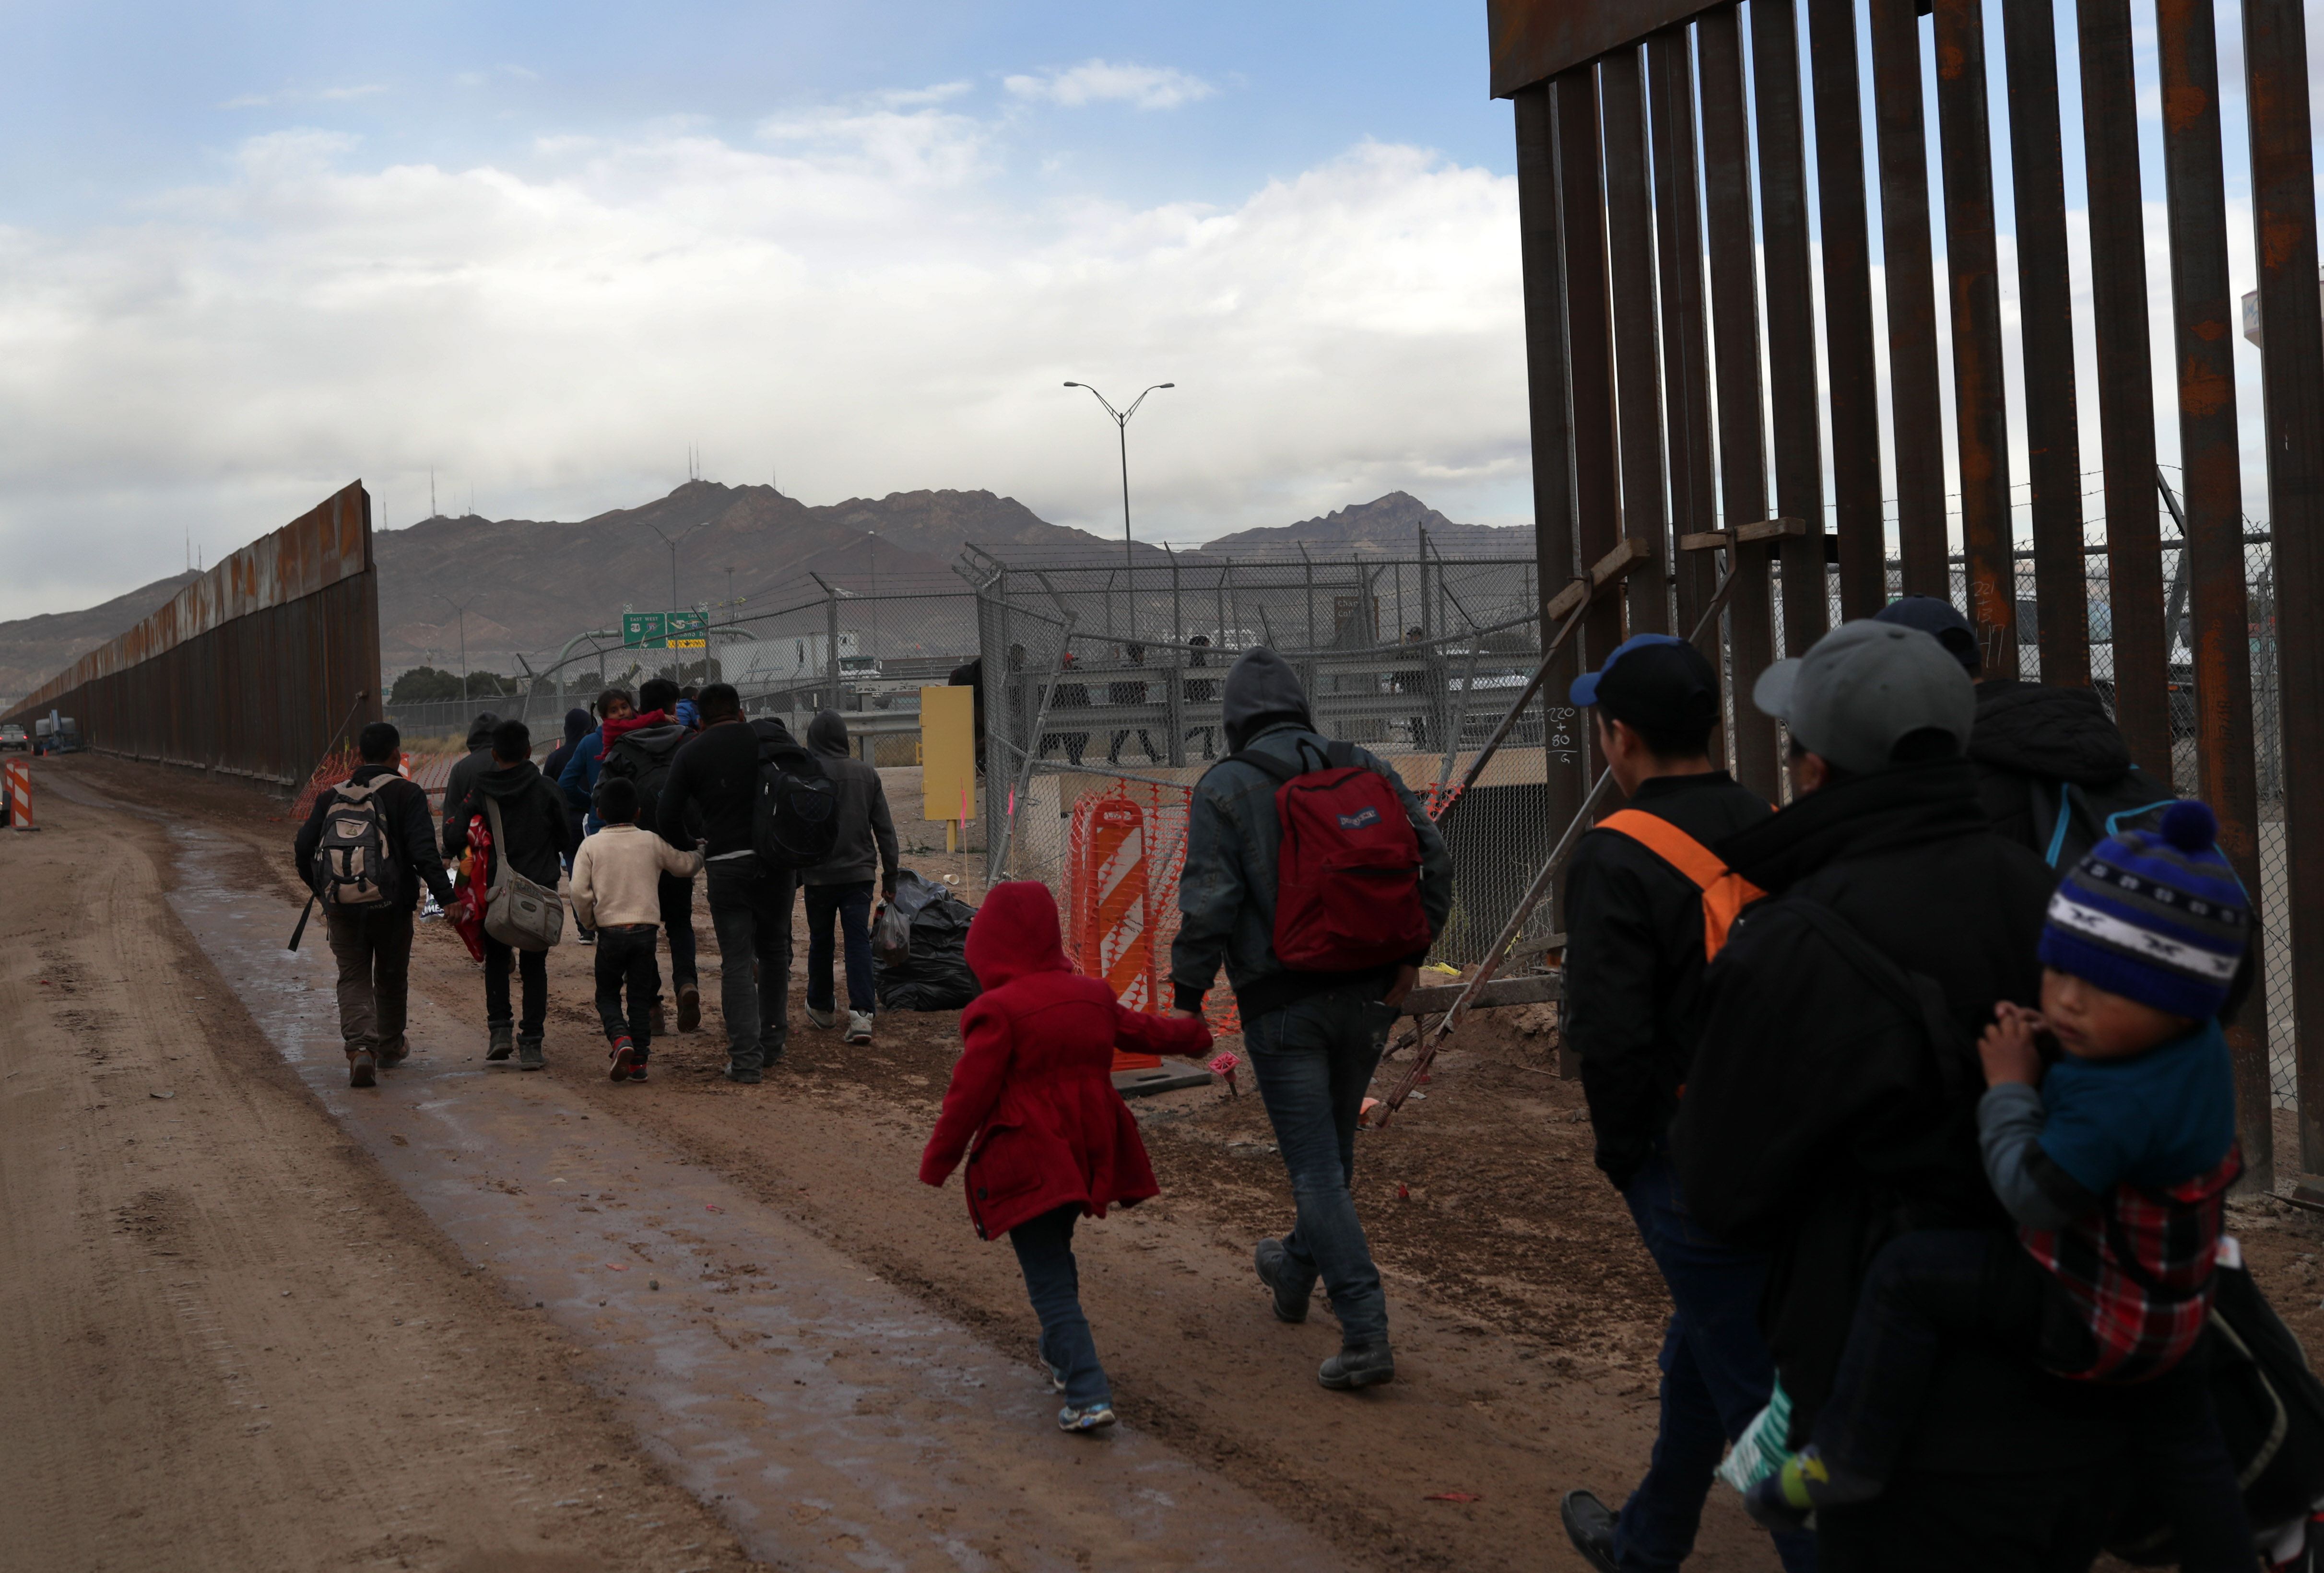 La caravana llegó a la frontera de El Paso, Texas, donde los migrantes solicitarán asilo. (Foto Prensa Libre. AFP)